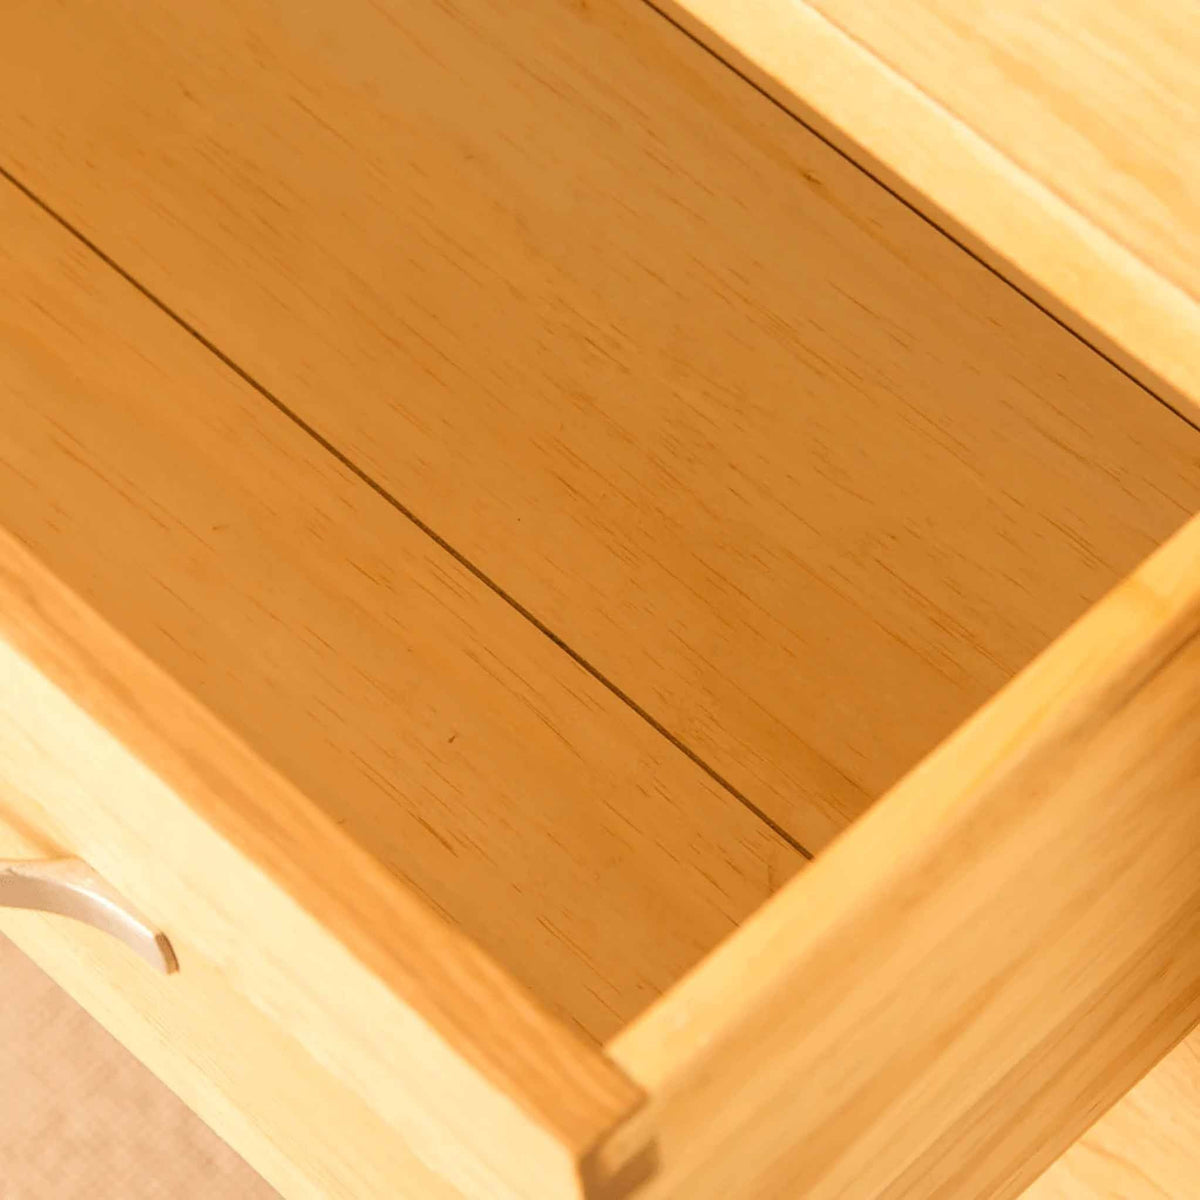 Inside of drawer - Newlyn Oak 2 over 3 Drawer Chest